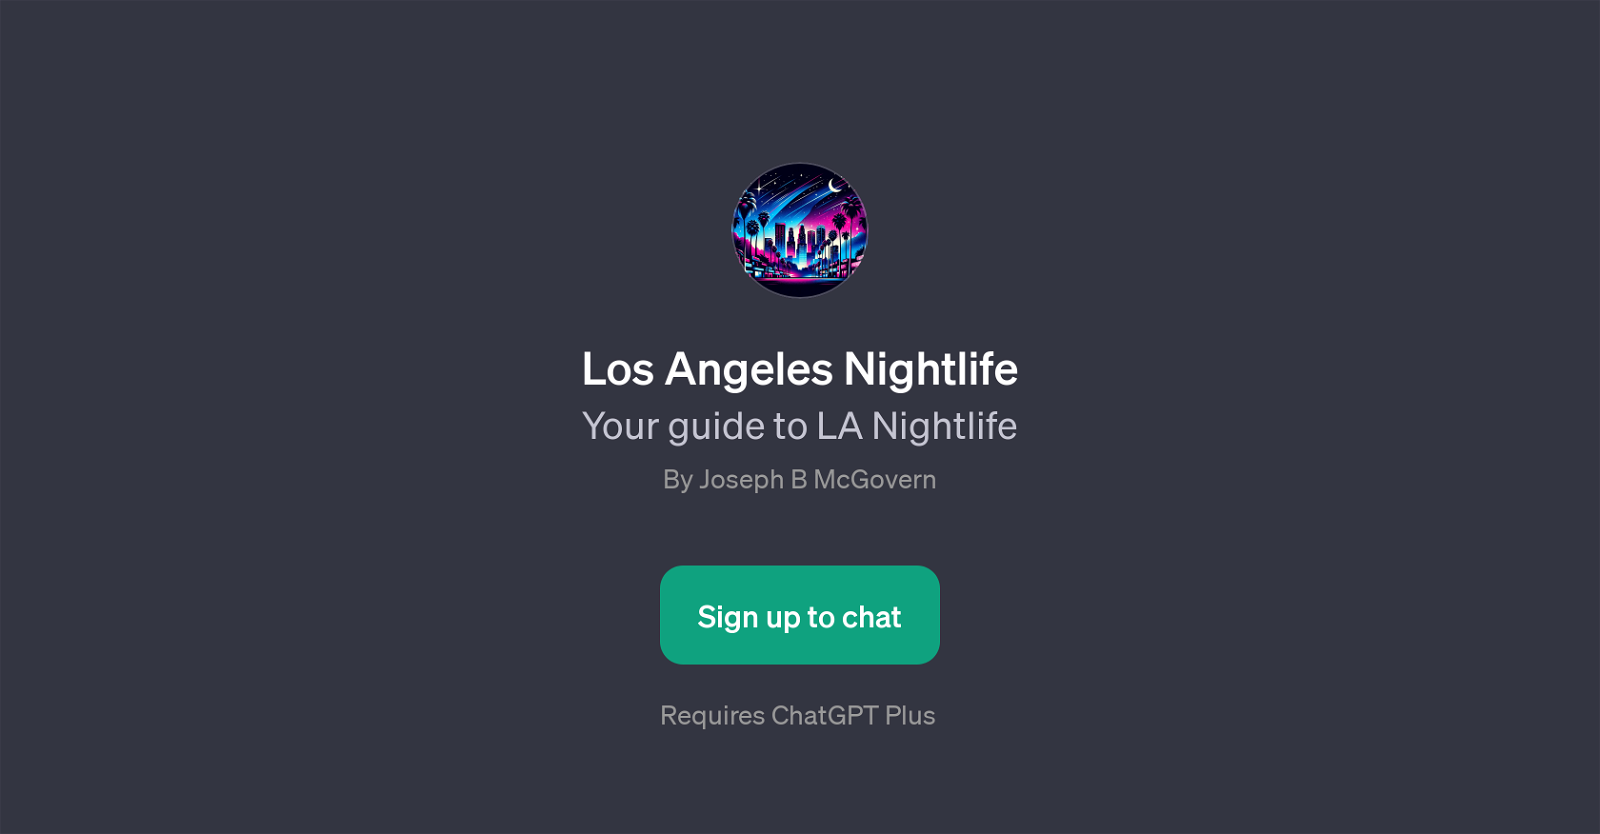 Los Angeles Nightlife website